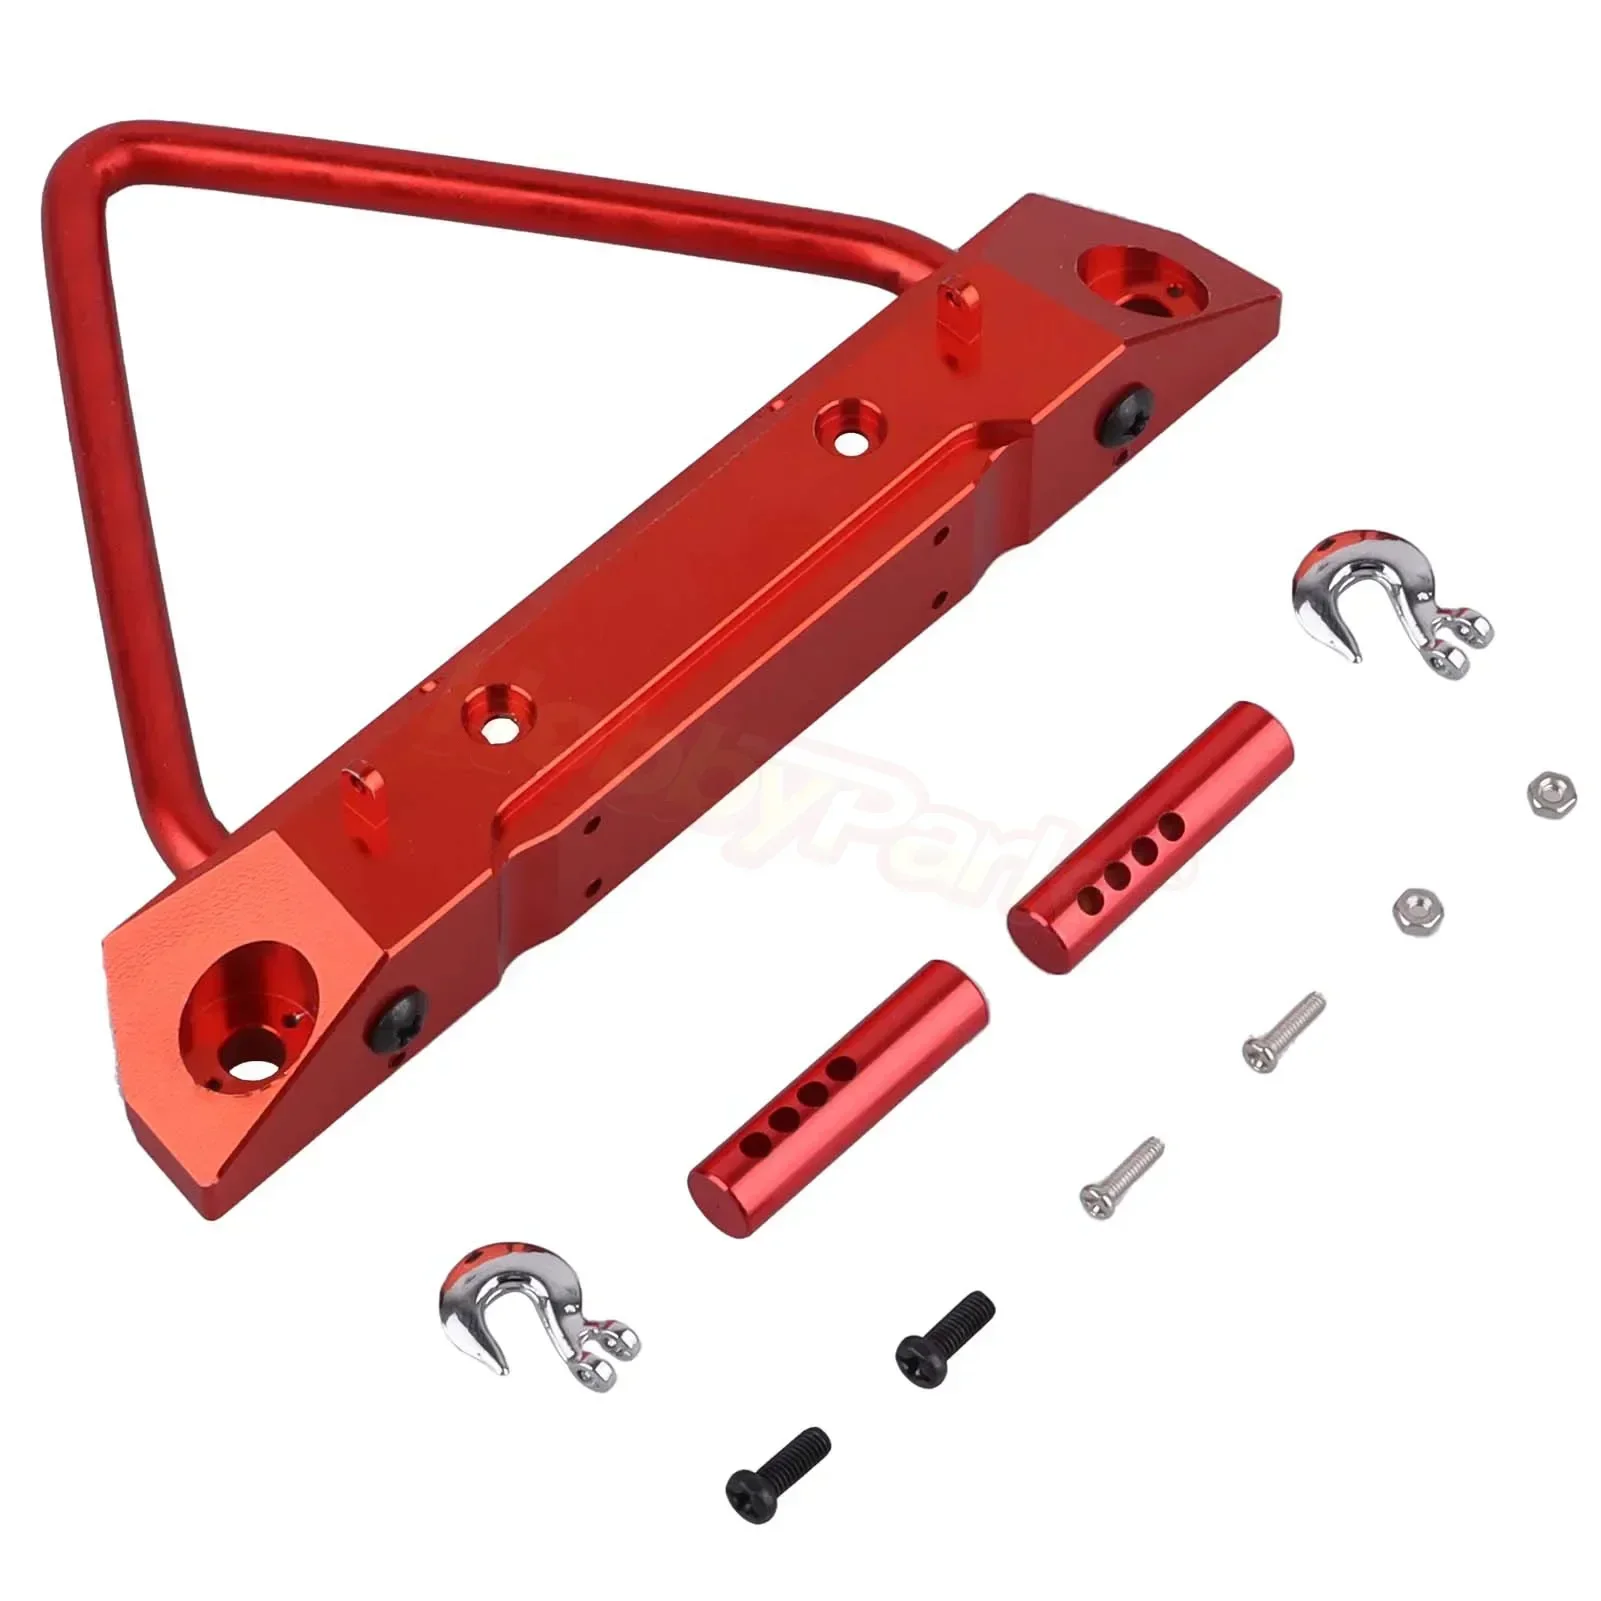 

Крепление переднего бампера HobbyPark для Axial SCX10 1/10 RC Crawler Car Upgrade Parts (красный)